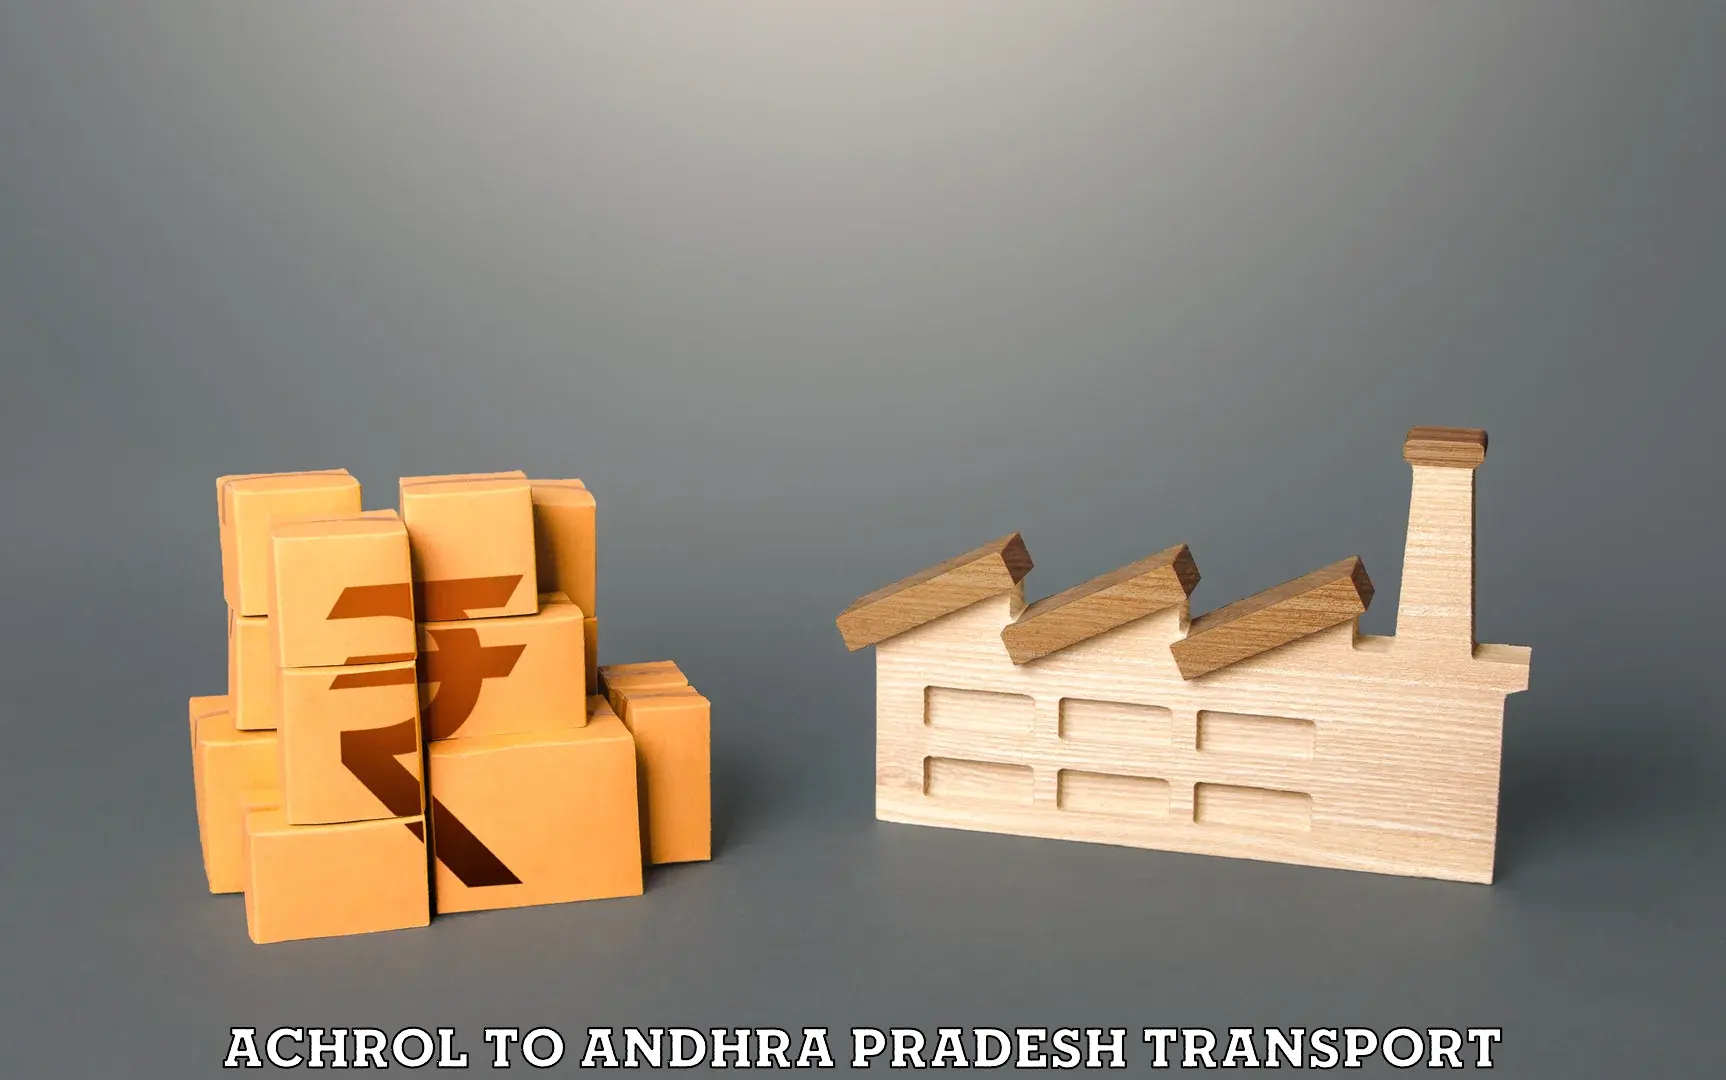 Container transport service Achrol to Devarapalli